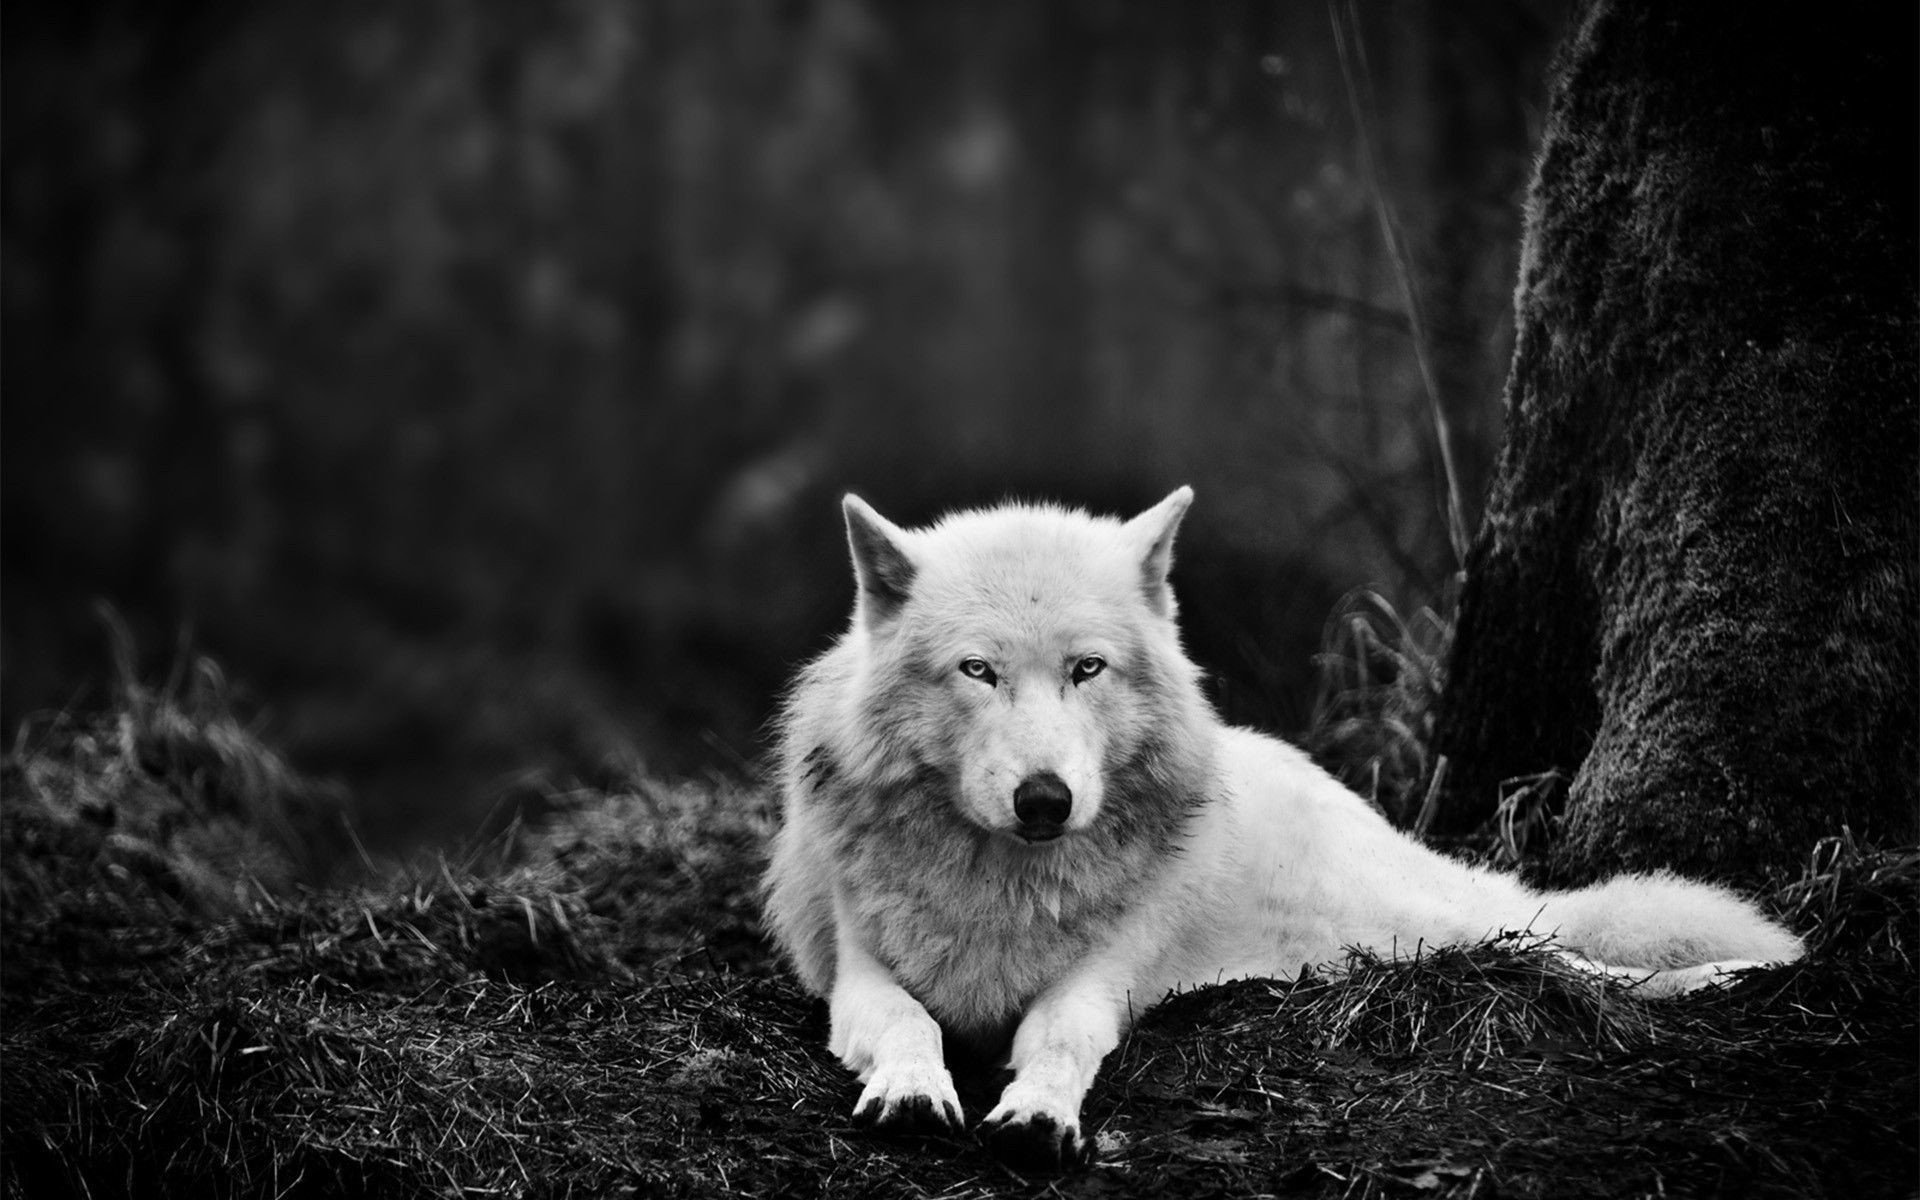 increíble fondo de pantalla en vivo,blanco,negro,en blanco y negro,canis lupus tundrarum,fotografía monocroma